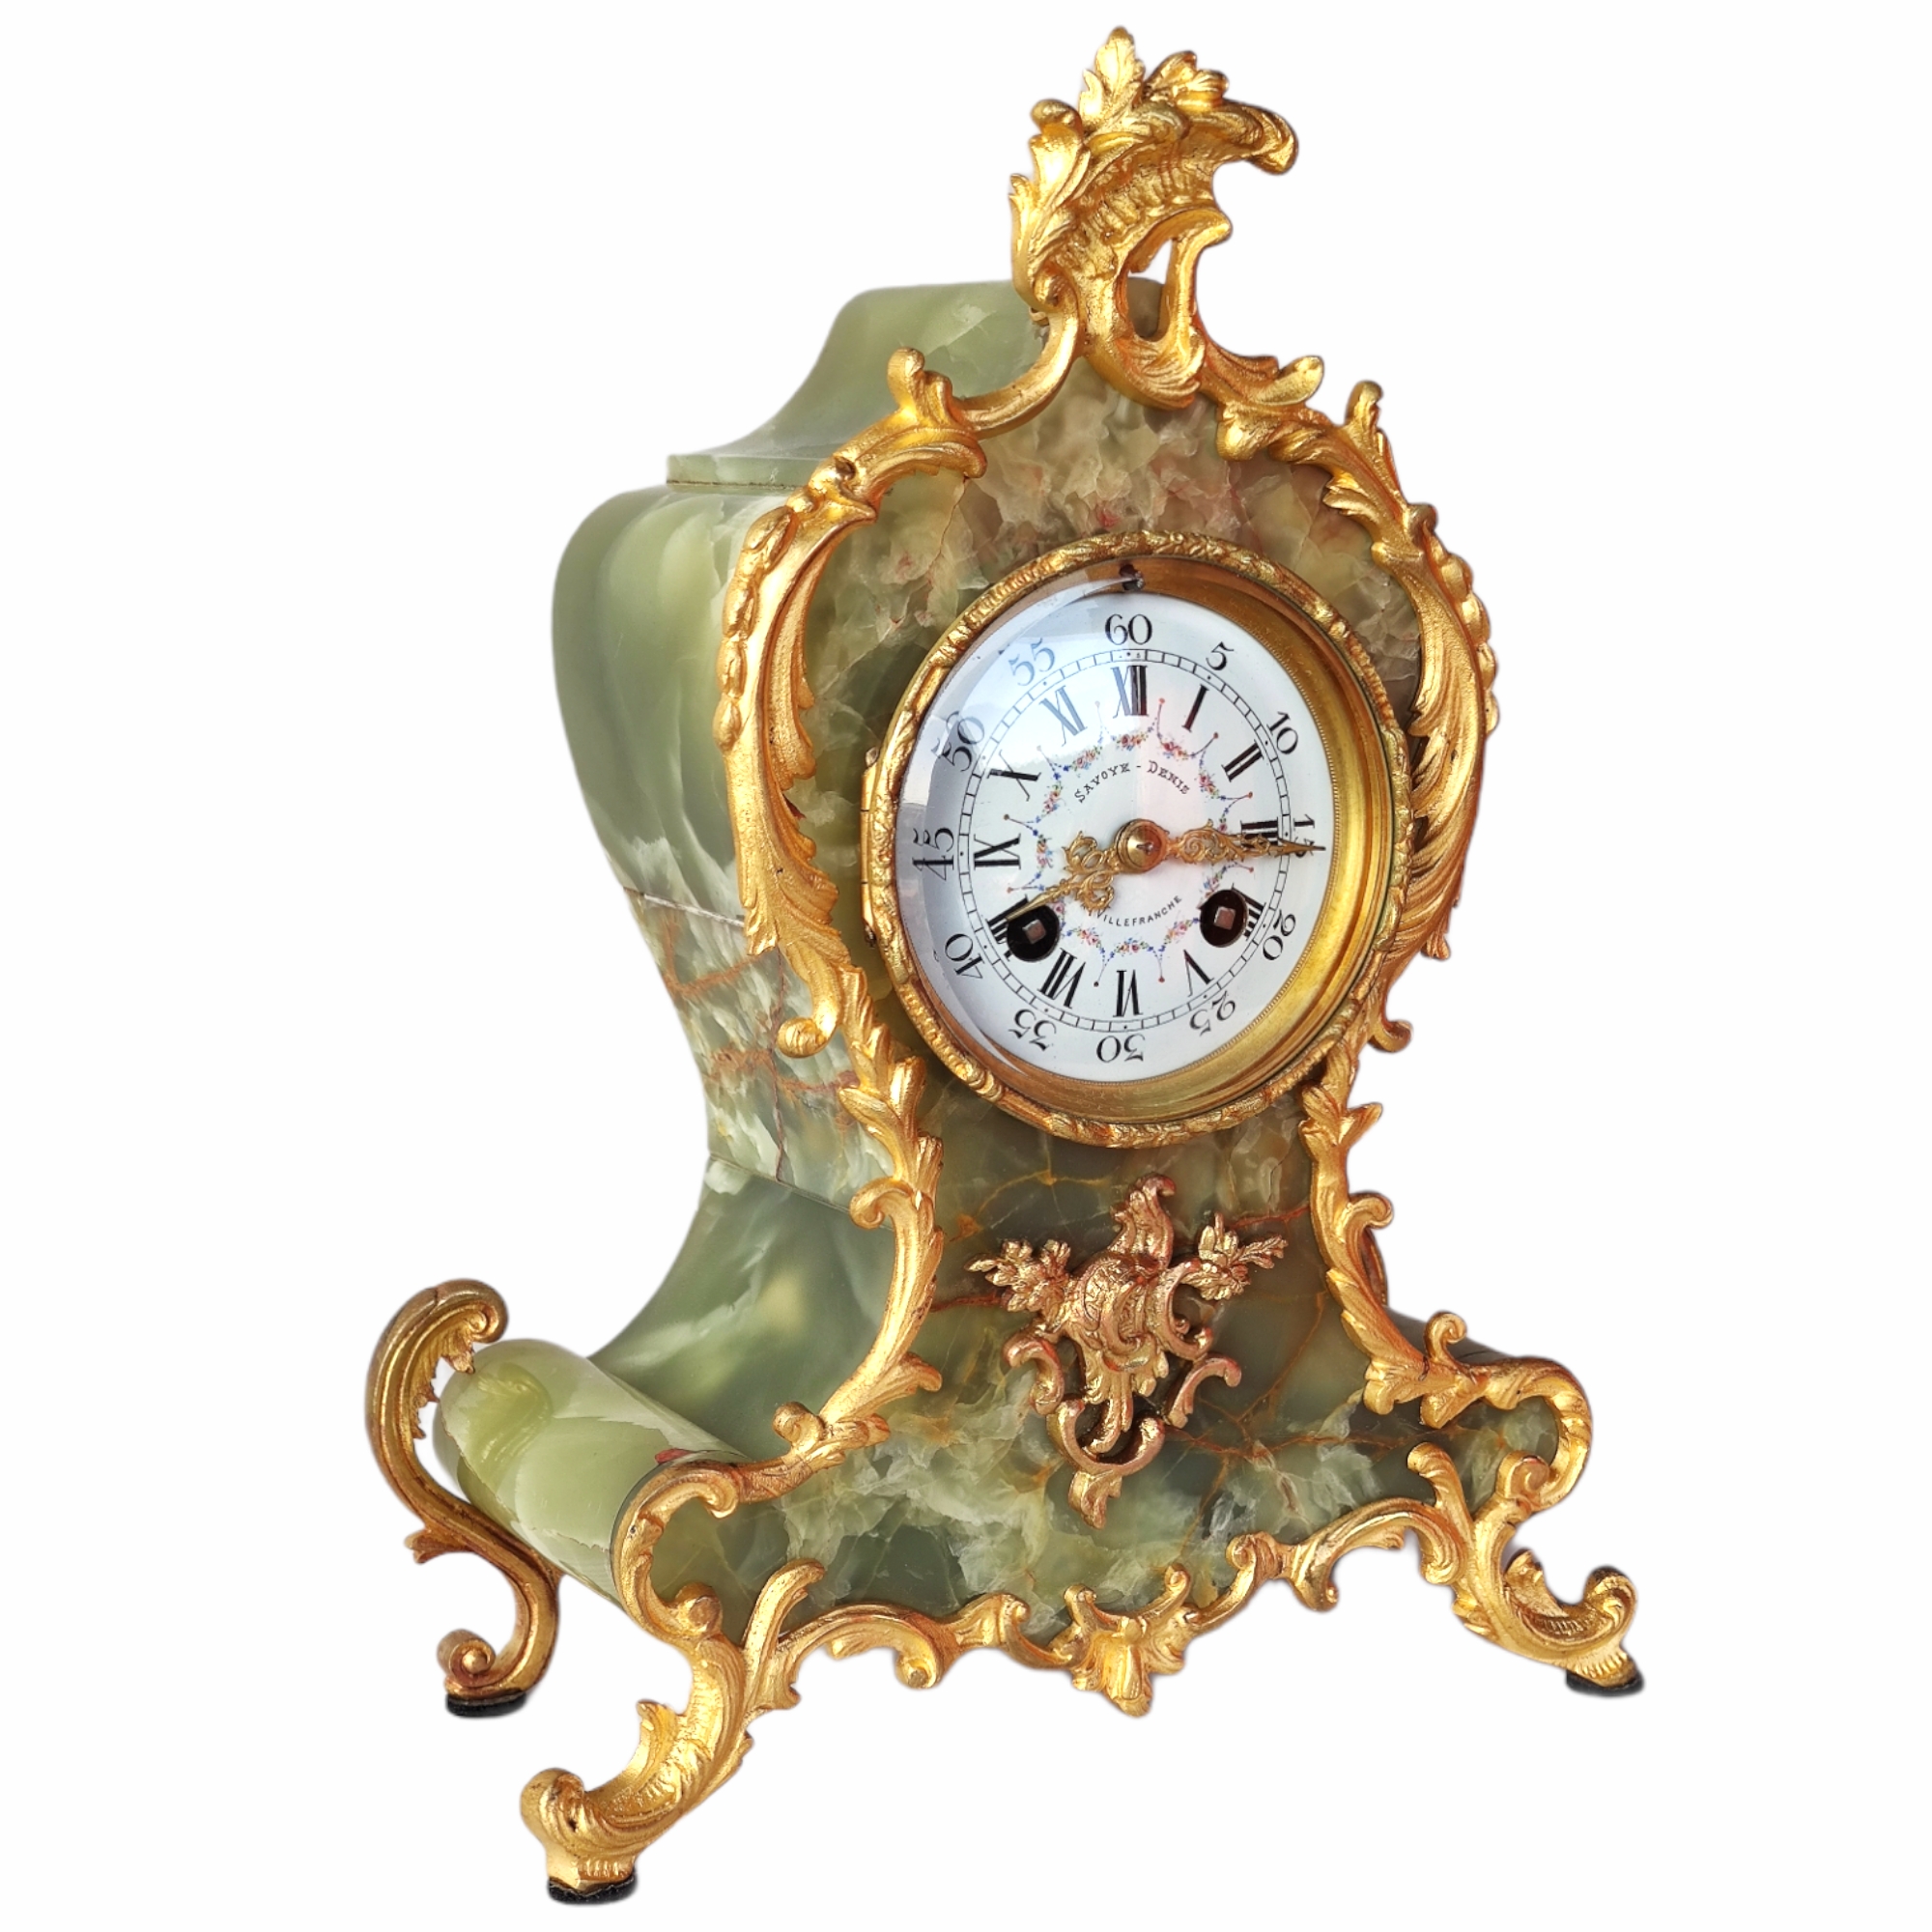 francuski zegar 1900 r.